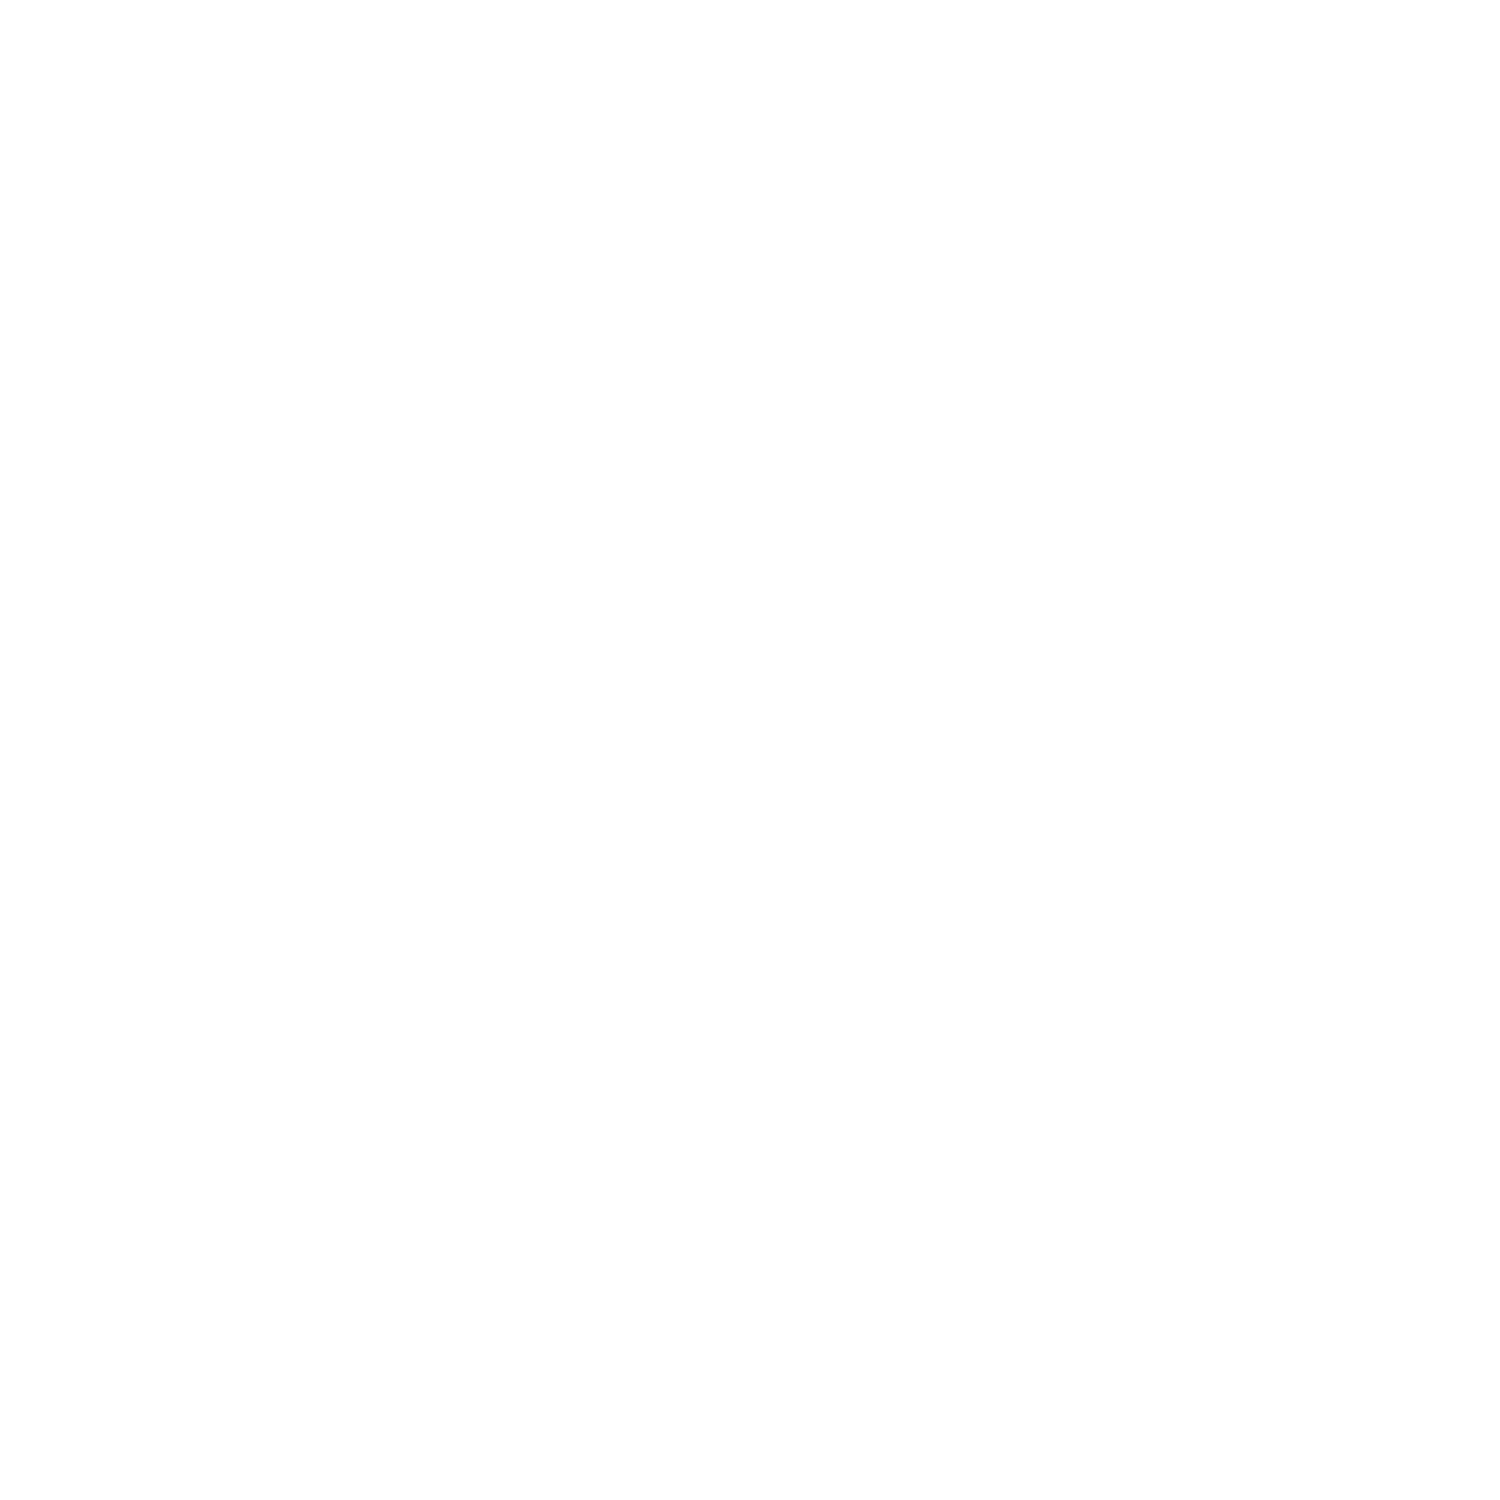 Jared Karol